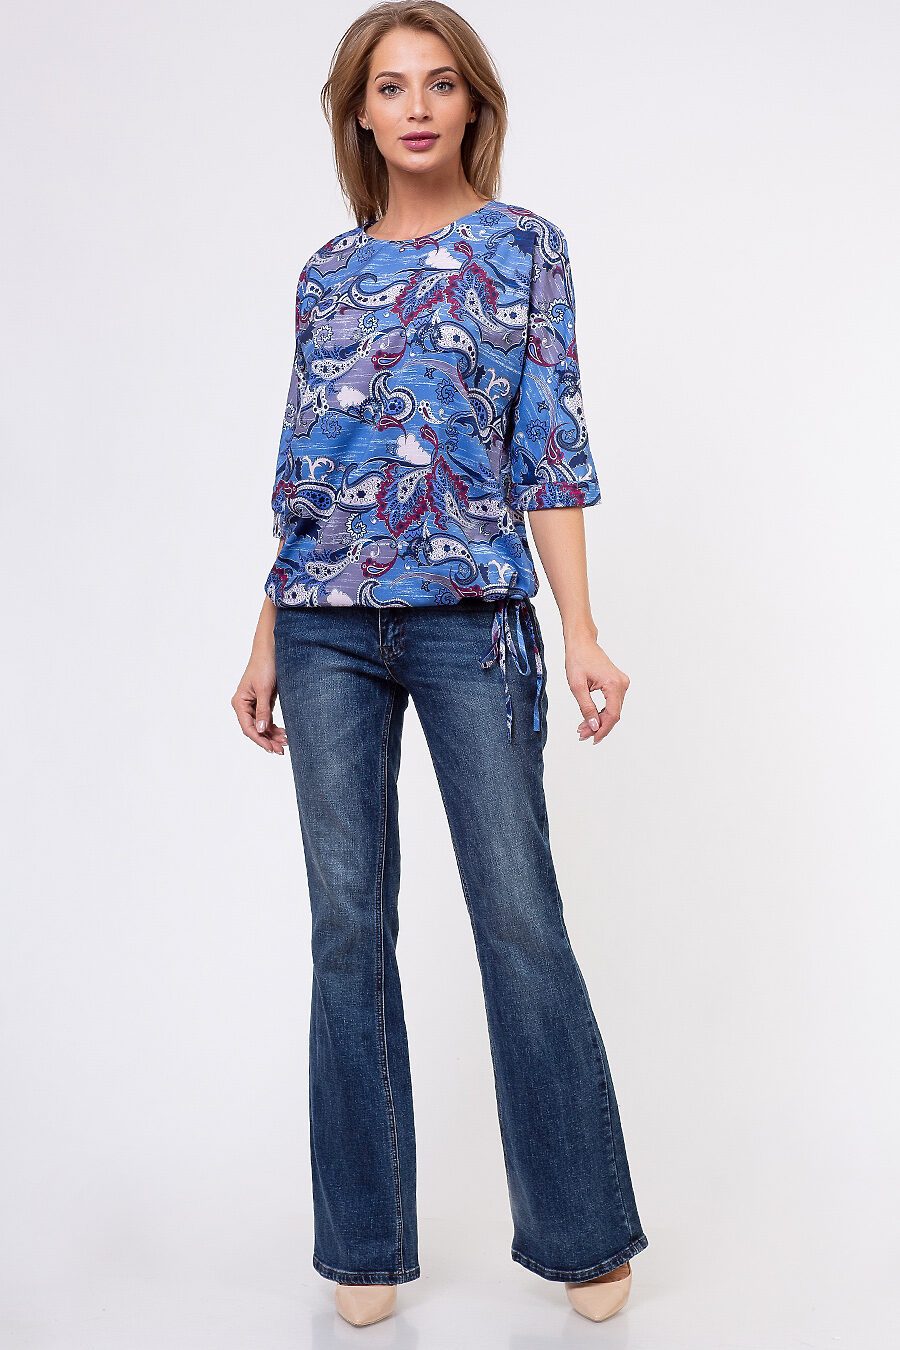 Блуза TUTACHI (127336), купить в Moyo.moda